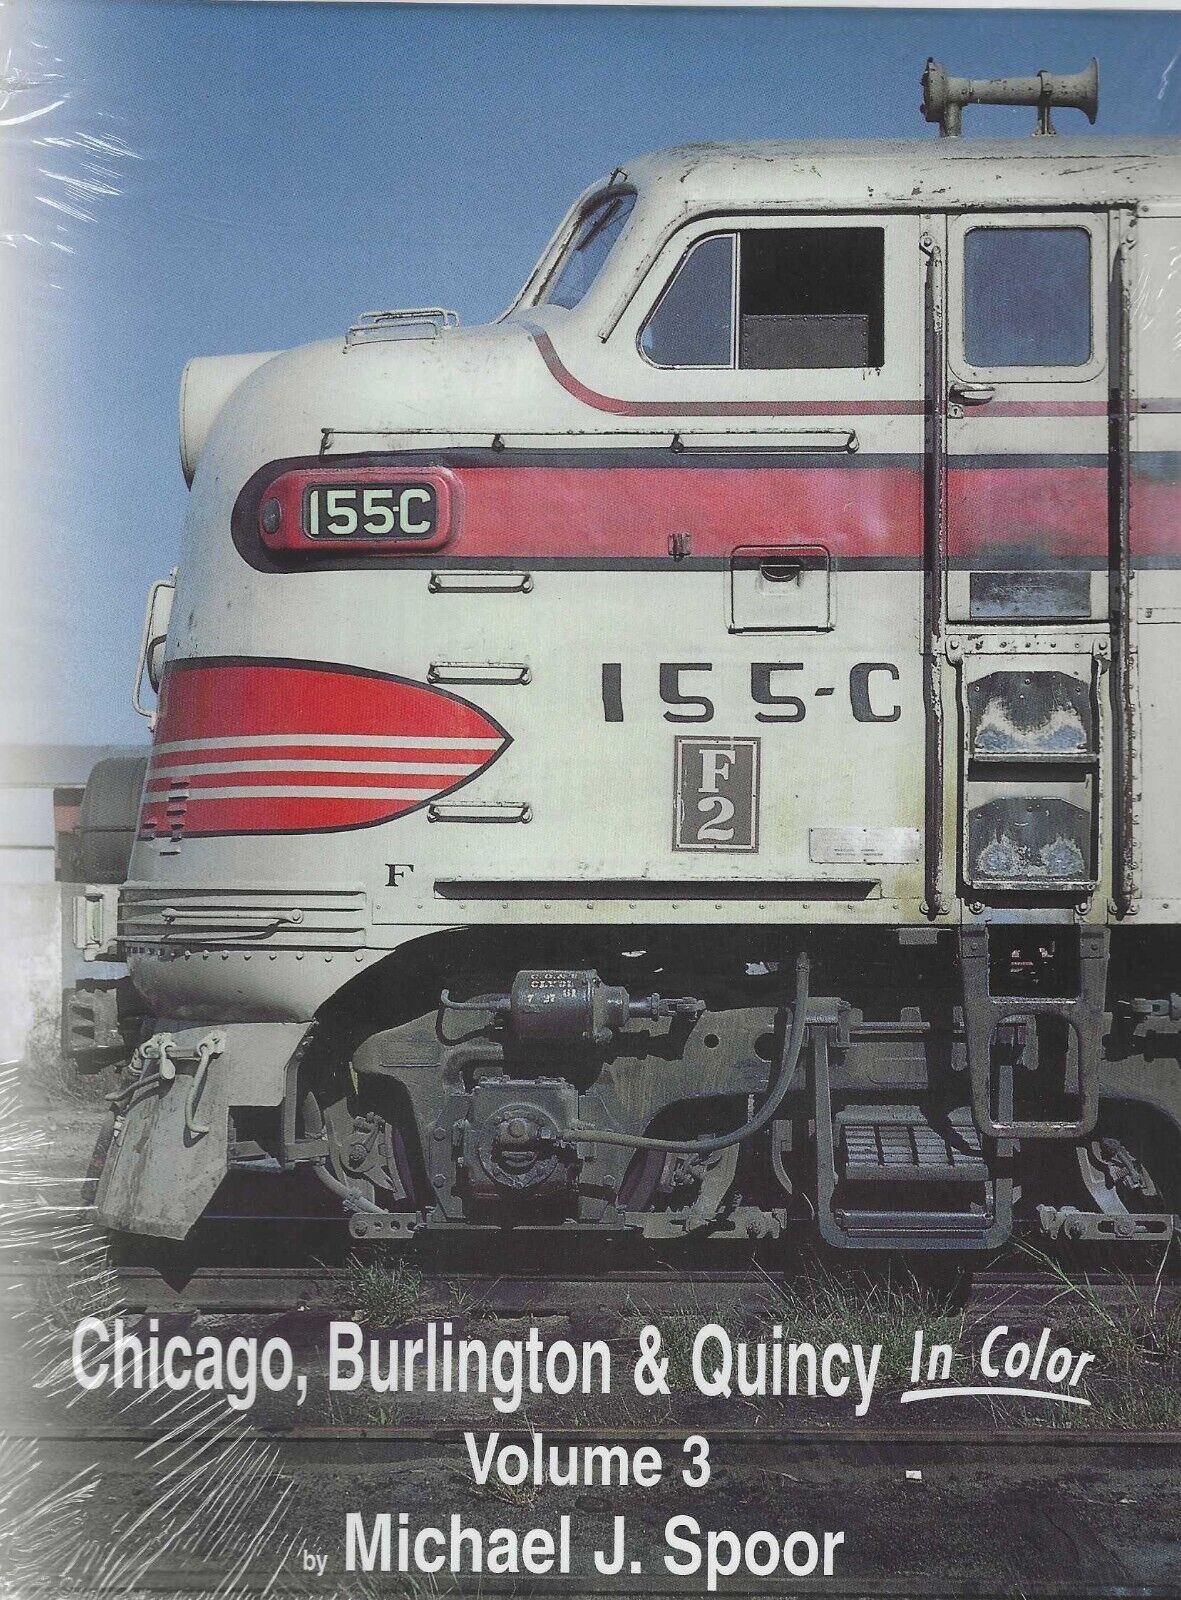 CHICAGO, BURLINGTON & QUINCY in Color, Vol. 3: St. Louis, Des Moines (NEW BOOK)